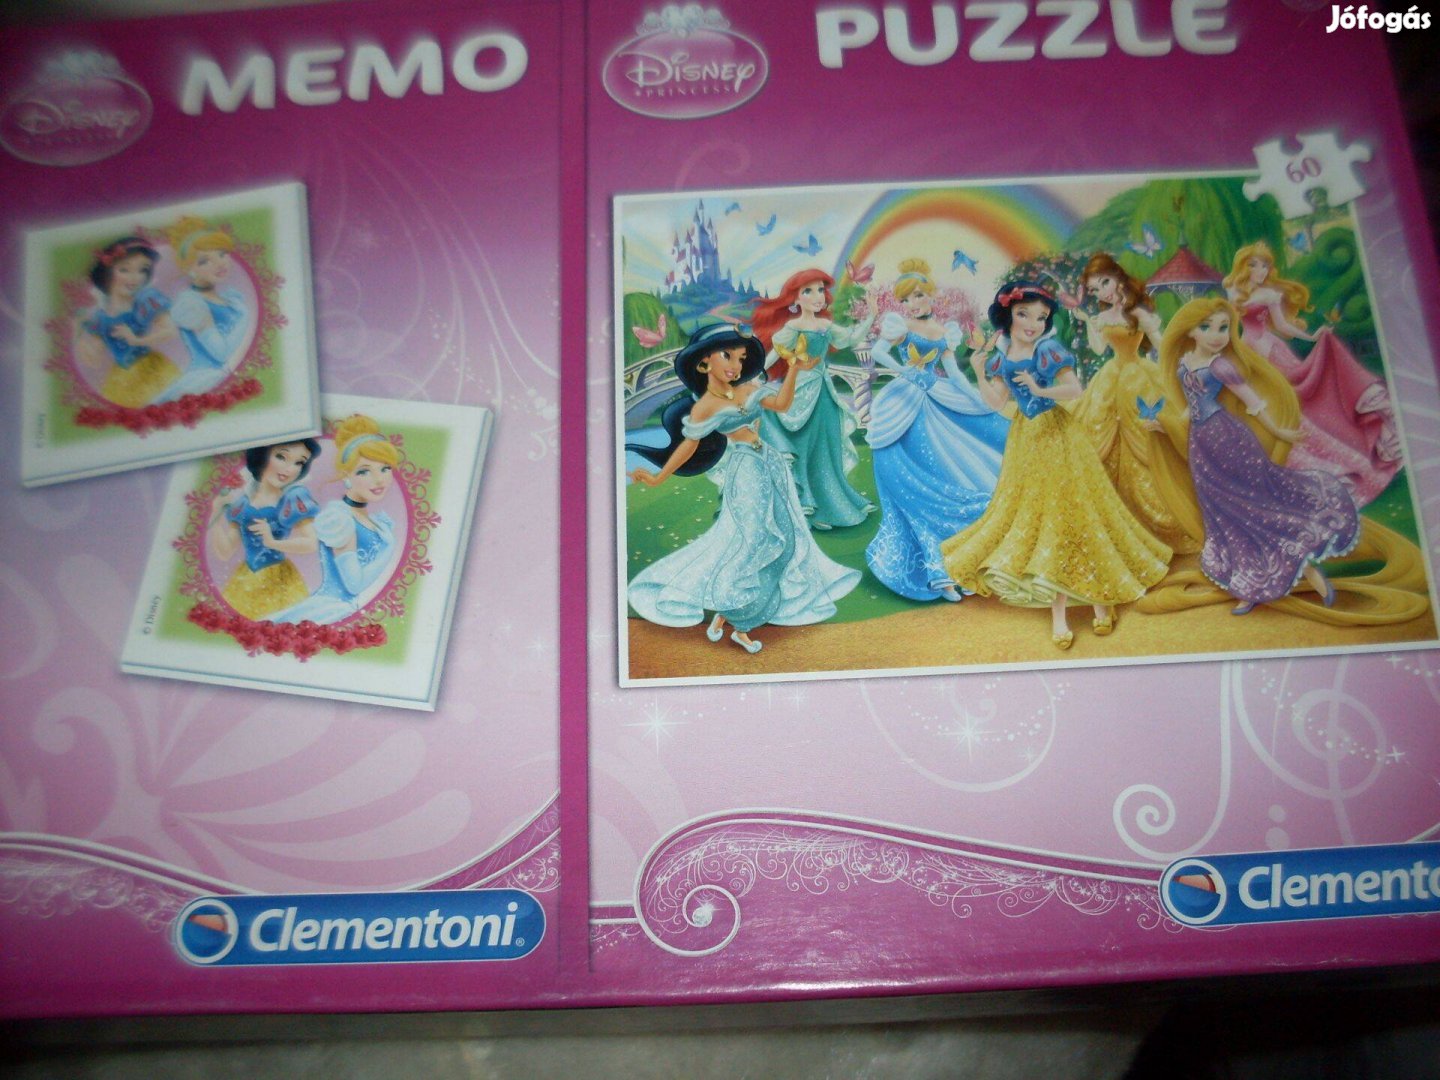 Hercegnős memoriajáték és puzzle és párkereső